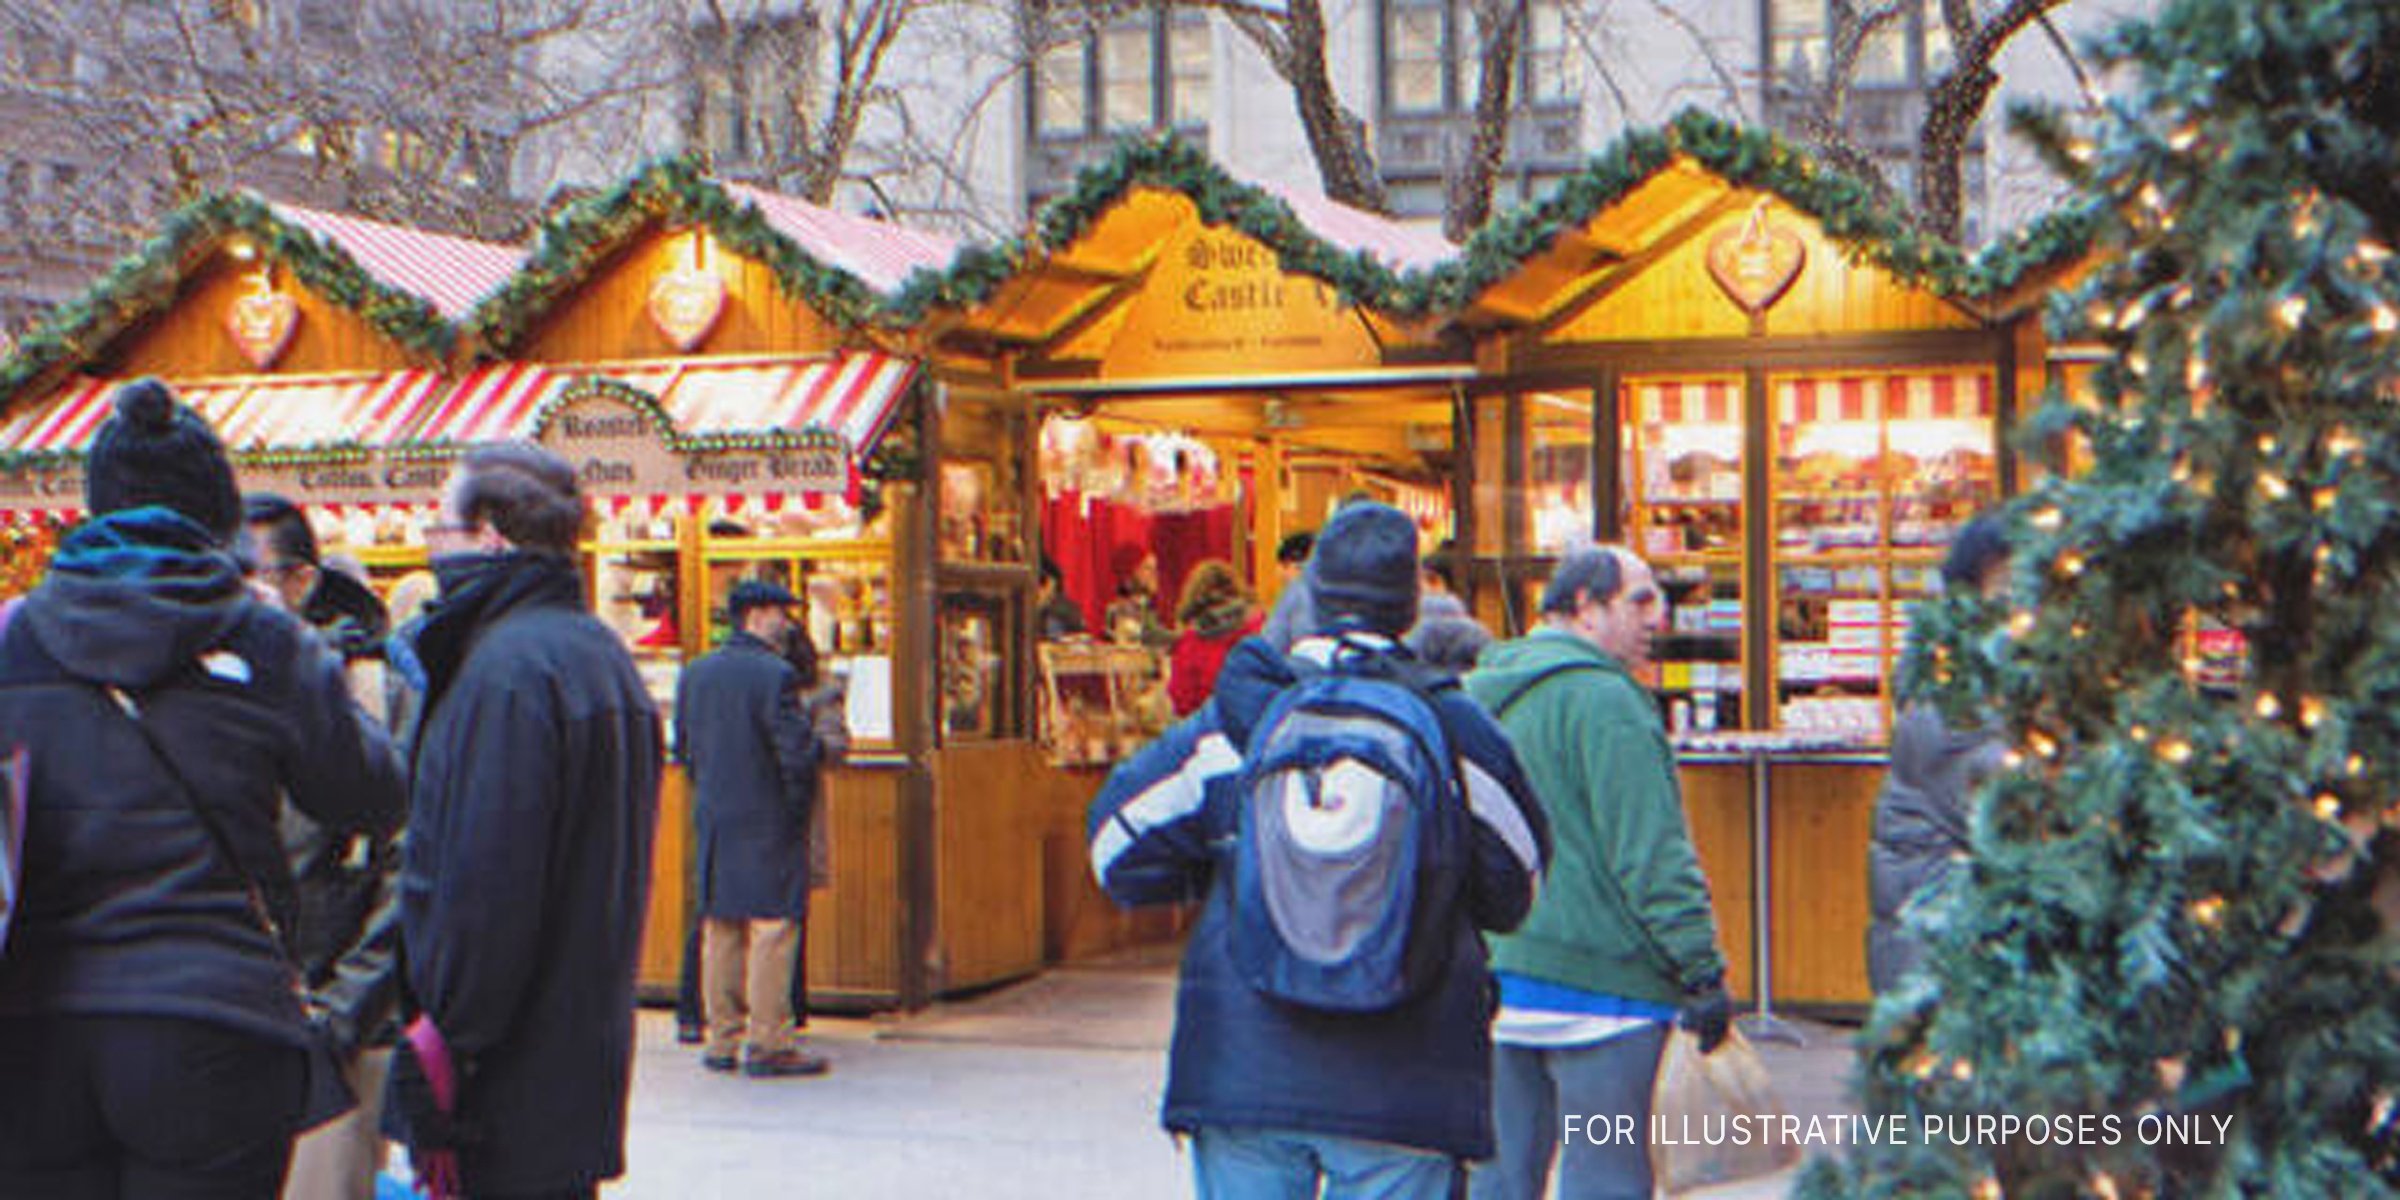 A Christmas fair. | Source: Shutterstock